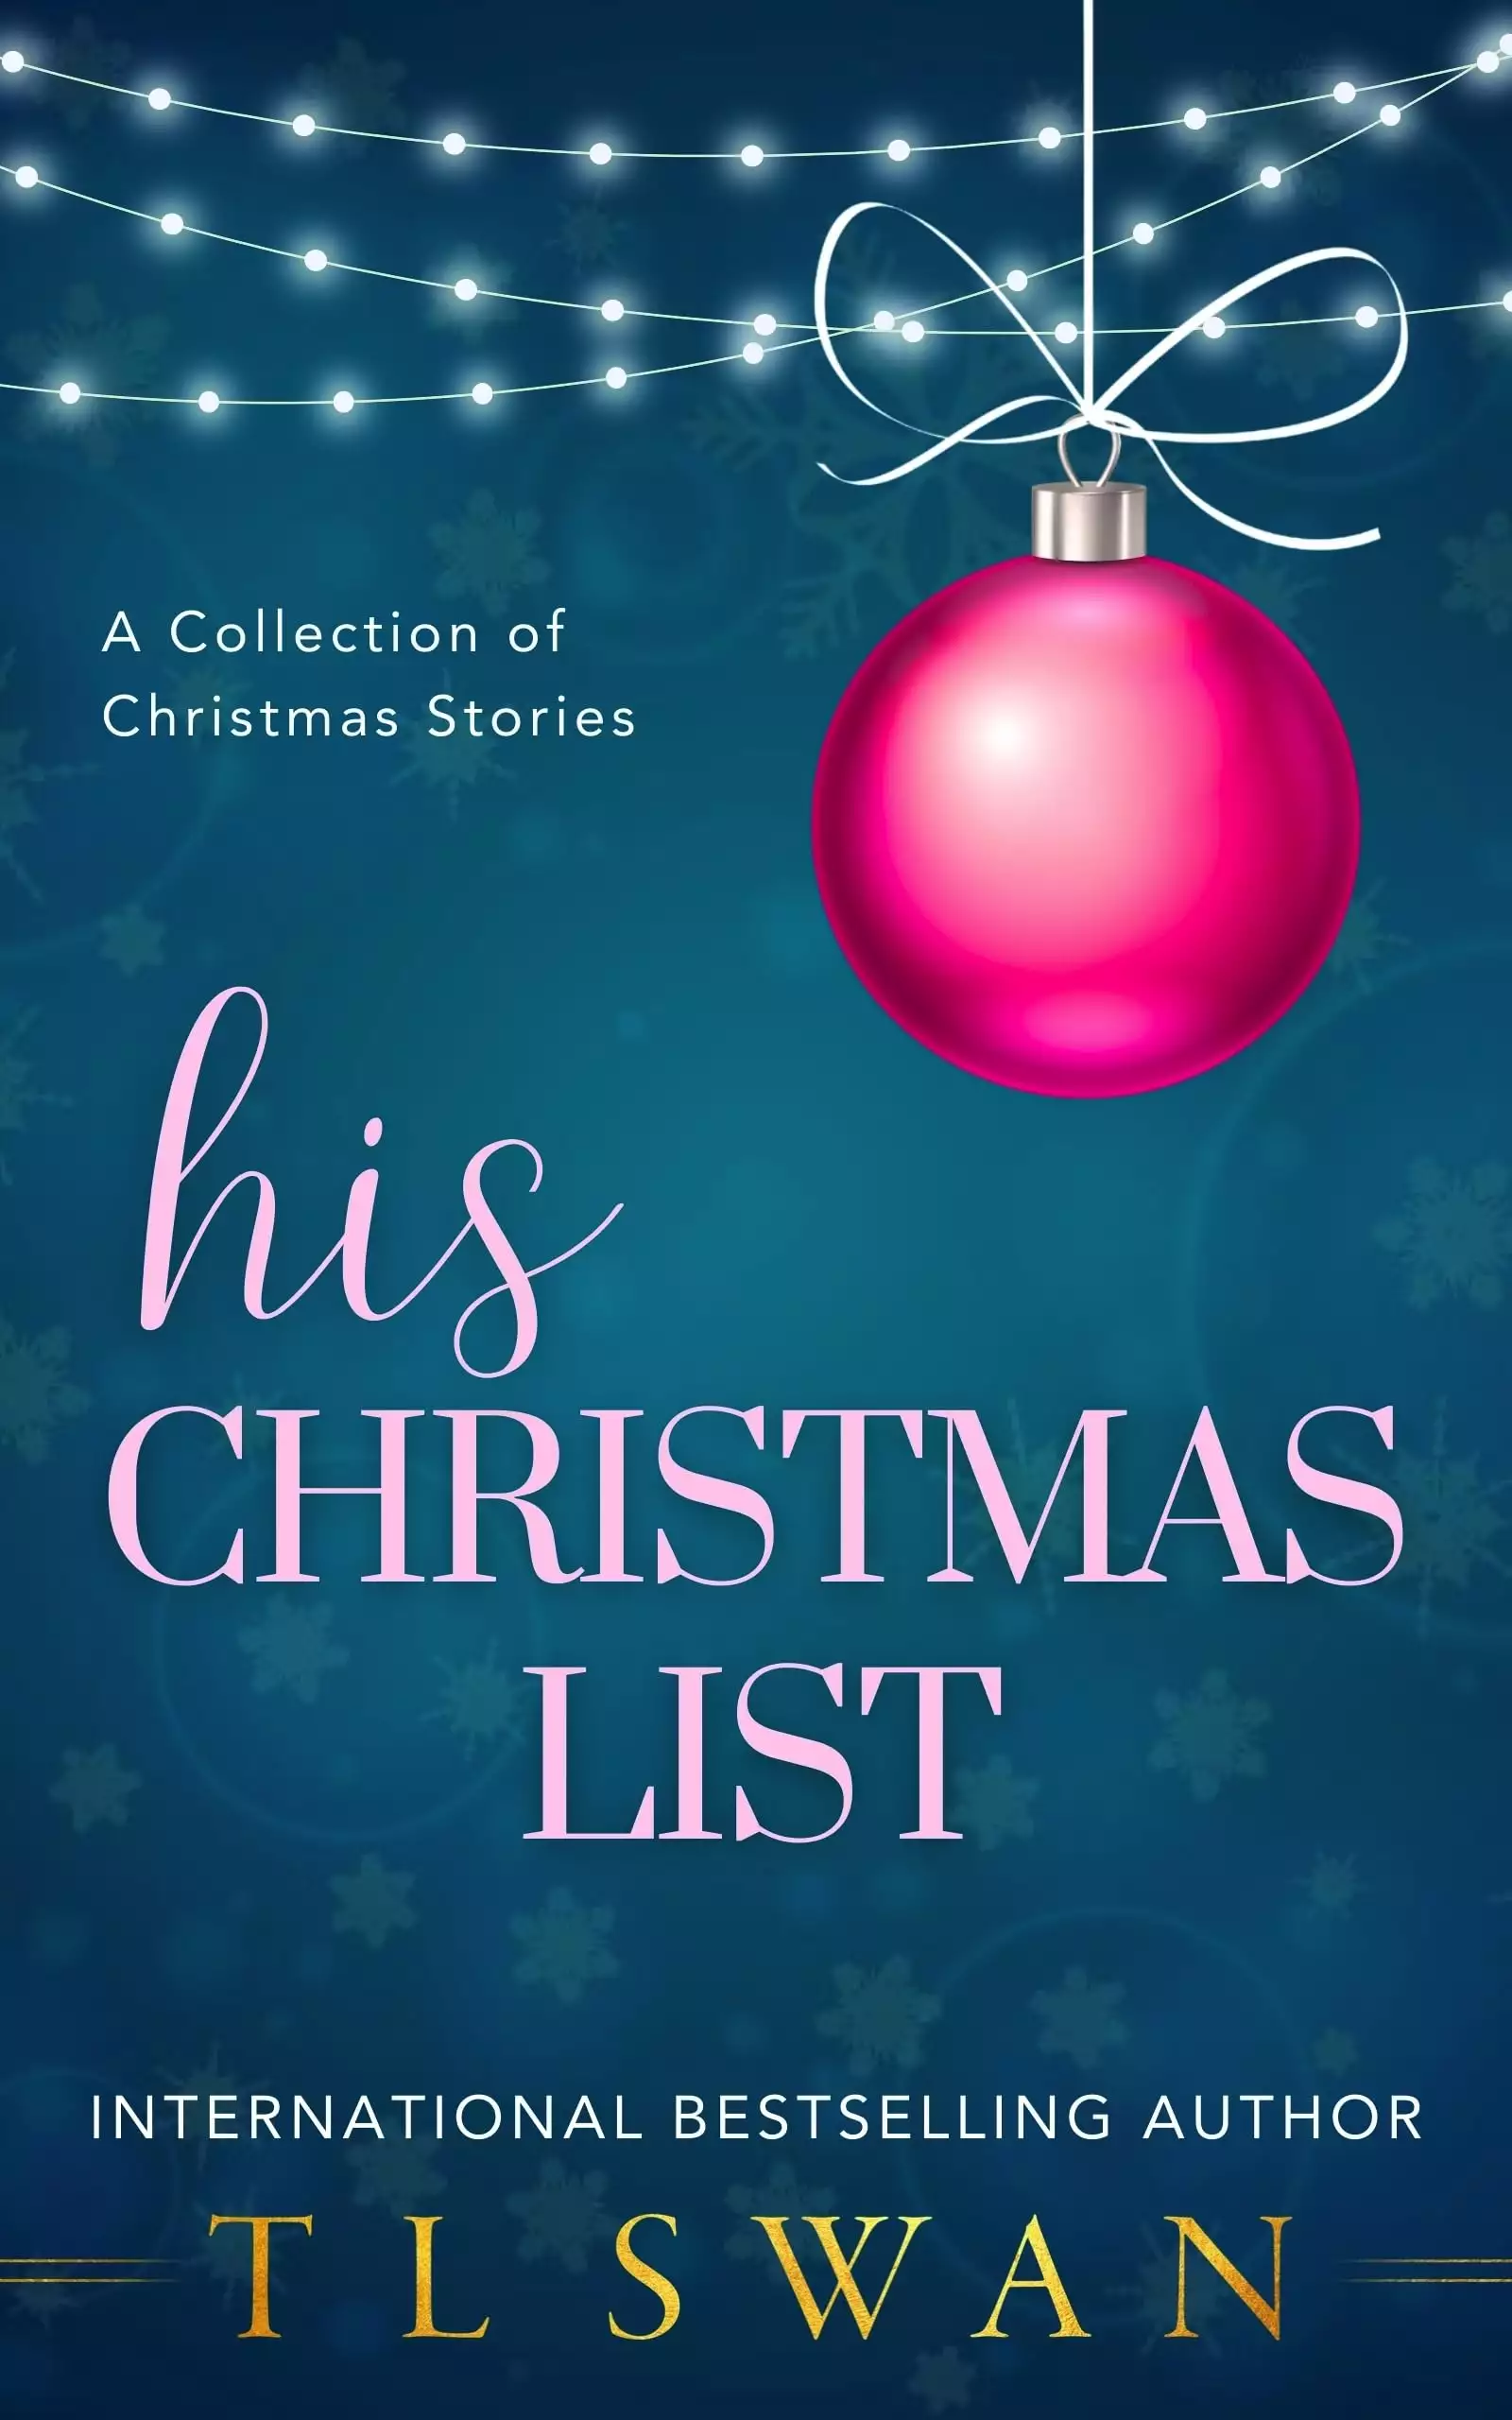 His Christmas List